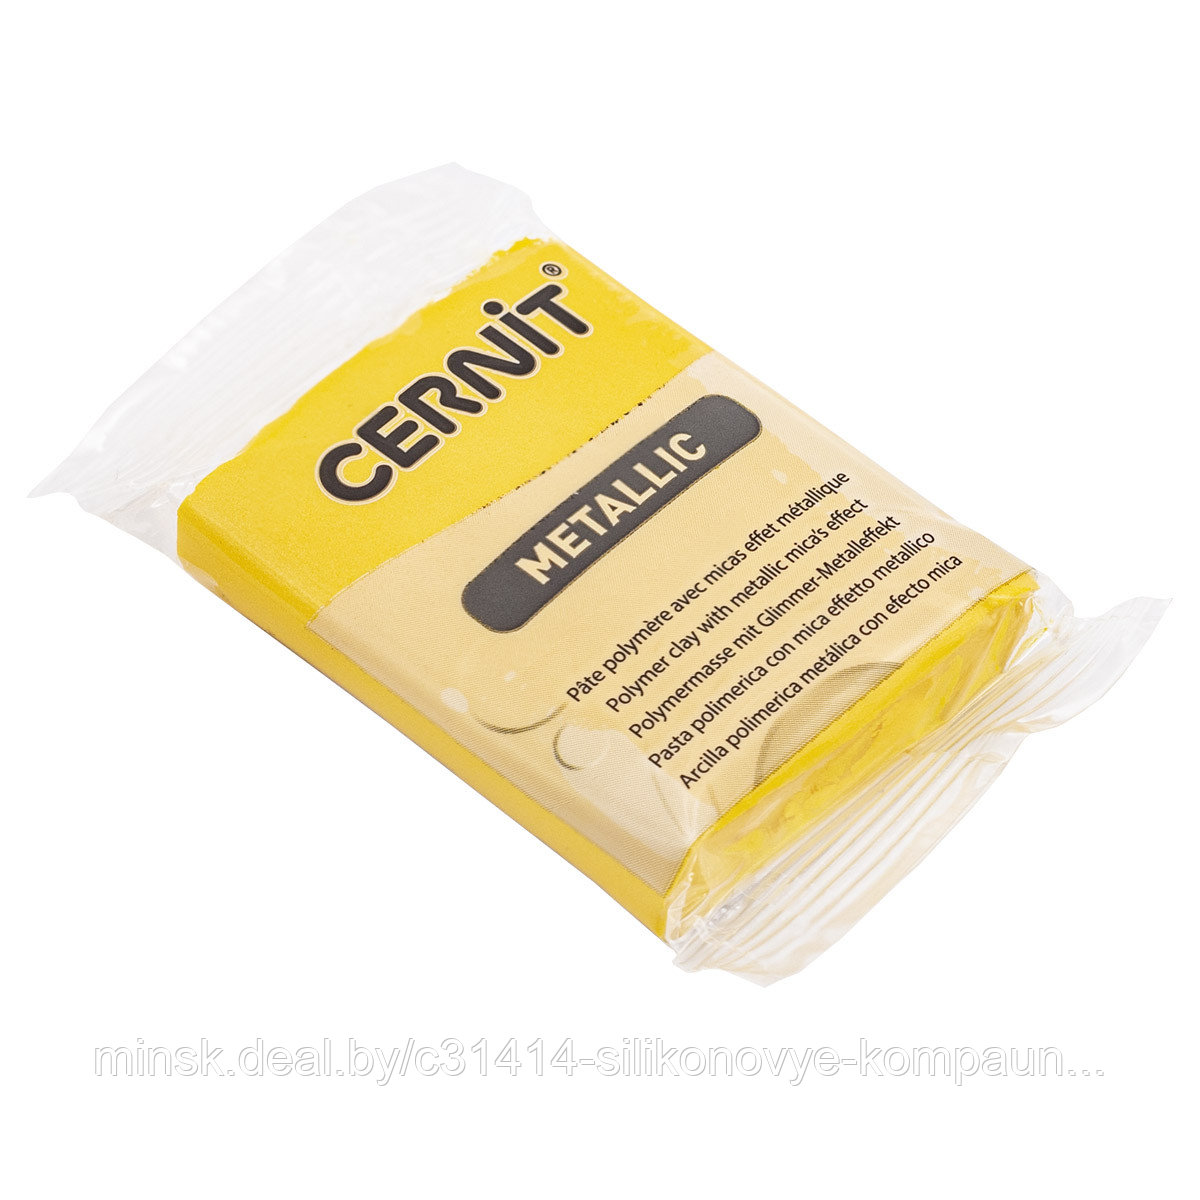 Пластика "Cernit Metallic" 56 гр 700 желтый